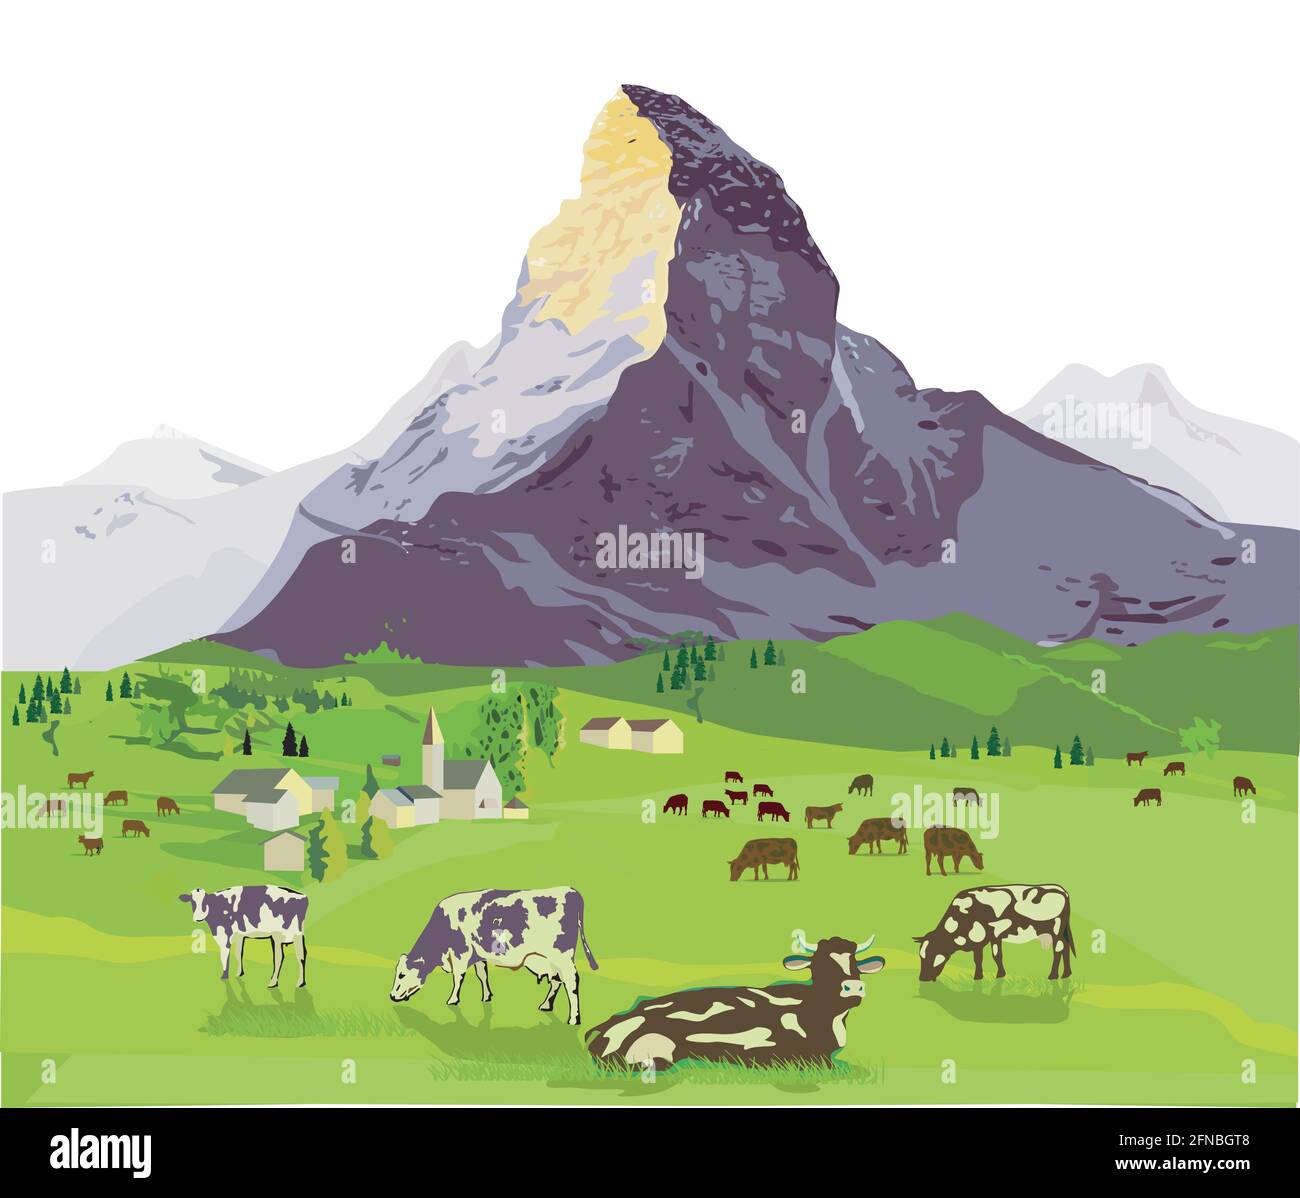 Alpine scenery Stock Vector Images - Alamy